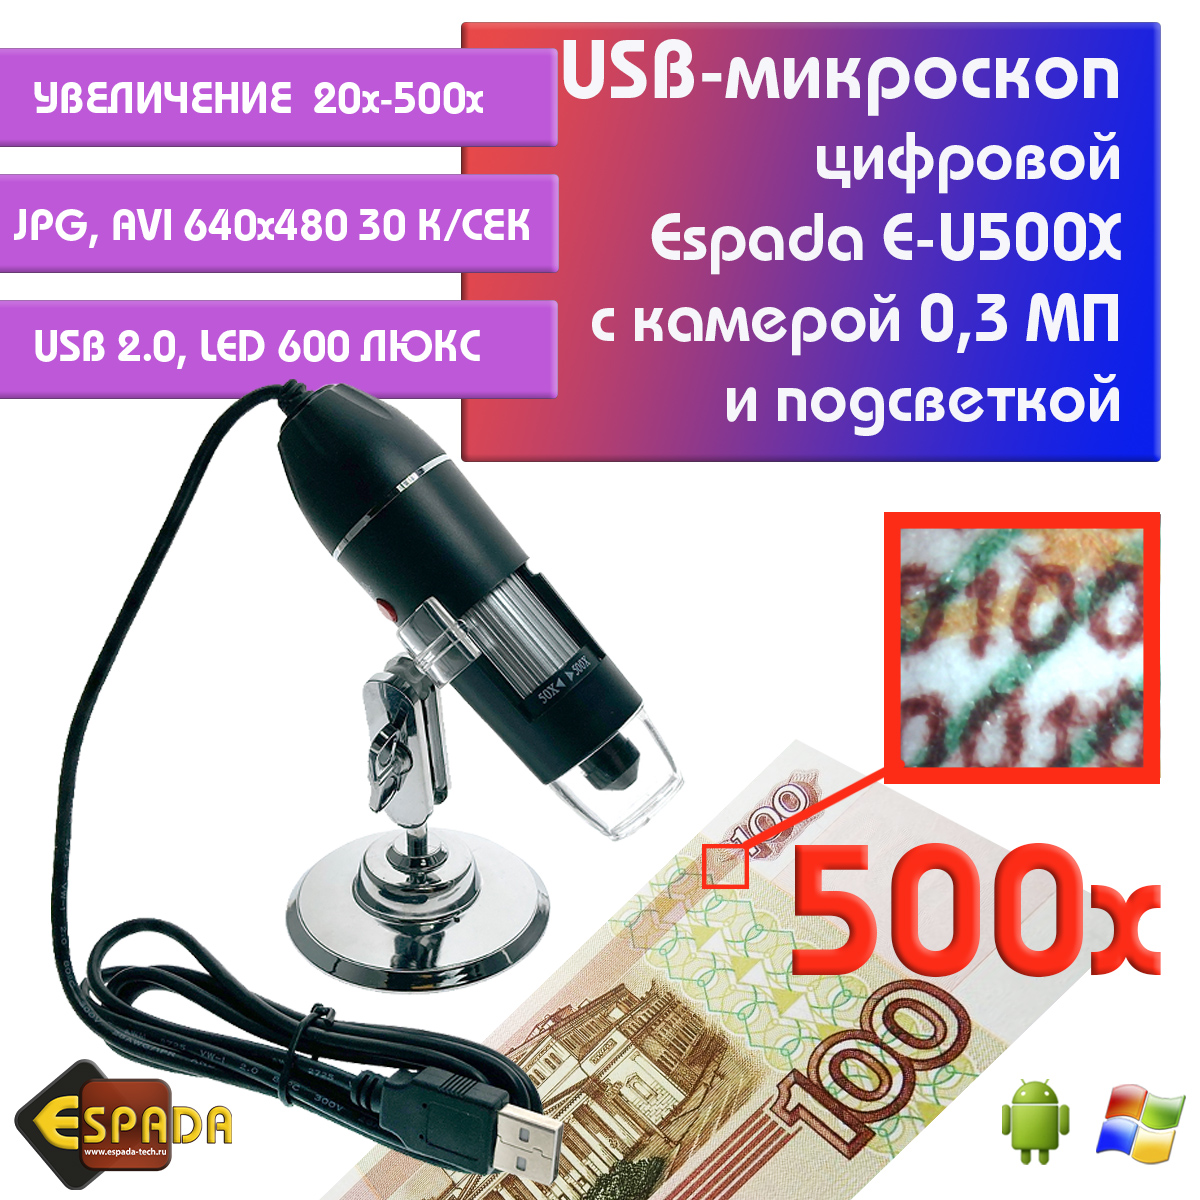 Портативный цифровой USB-микроскоп Espada E-U500X c камерой 0,3 МП и увеличением 500x видеокарта gigabyte gtx 1650 gddr6 4gb gv n1656wf2oc 4gd